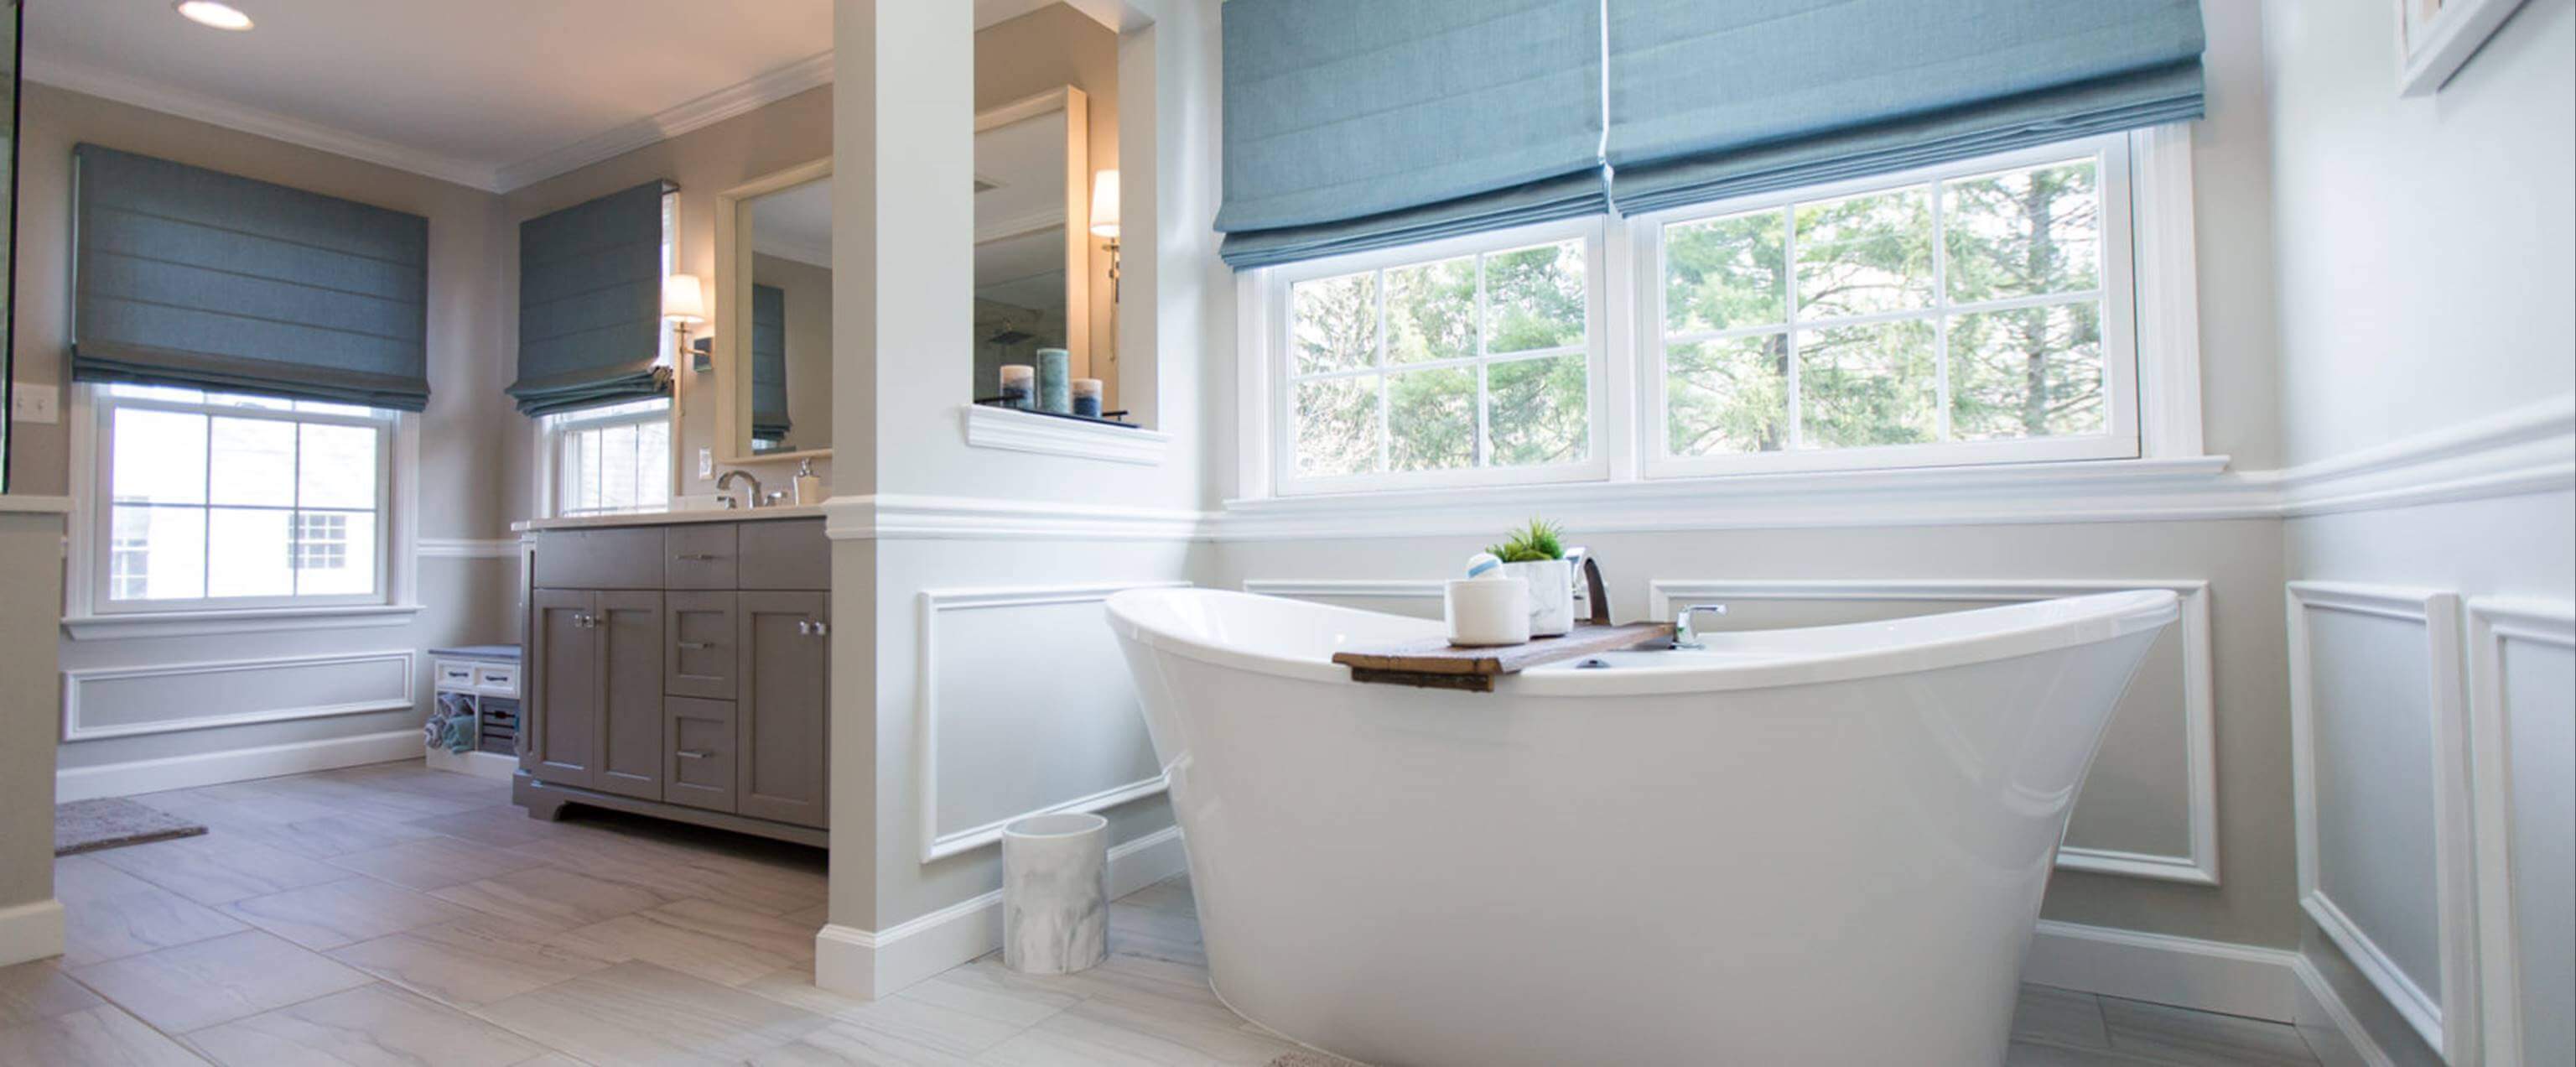 10 Walk-In Shower Ideas to Inspire Your Next Bathroom Reno - Bob Vila